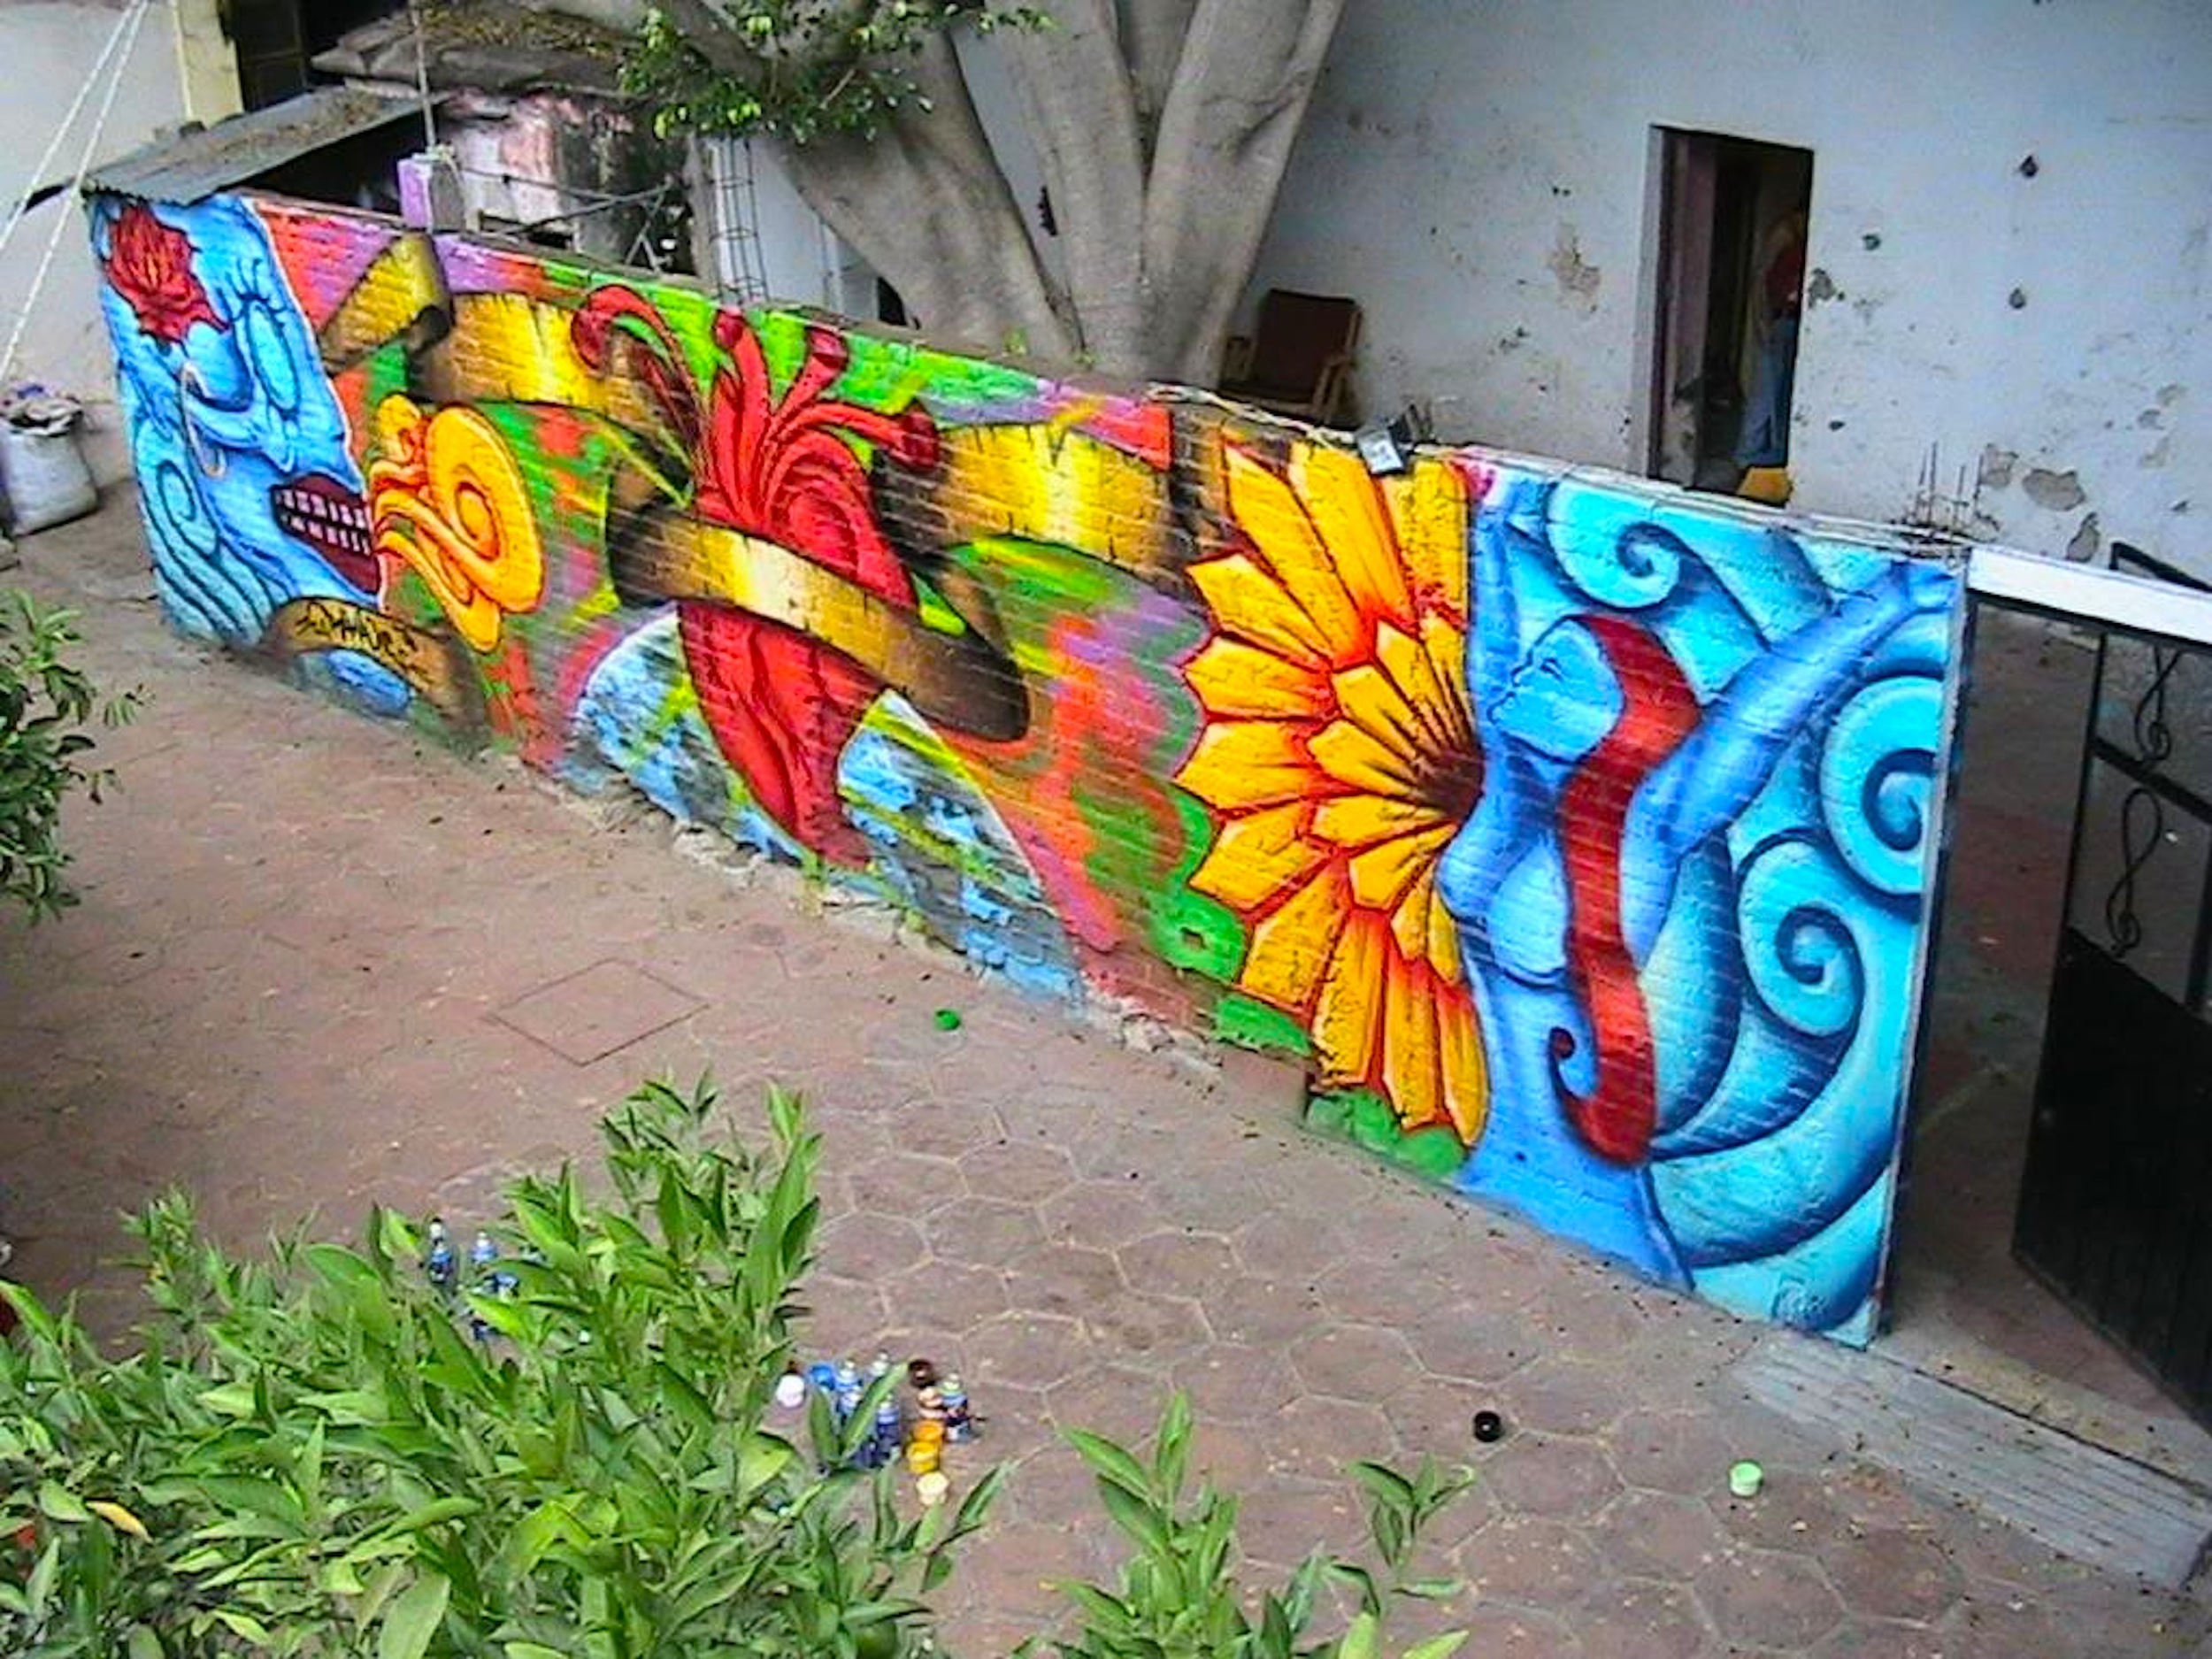 Oaxaca, Mexico.